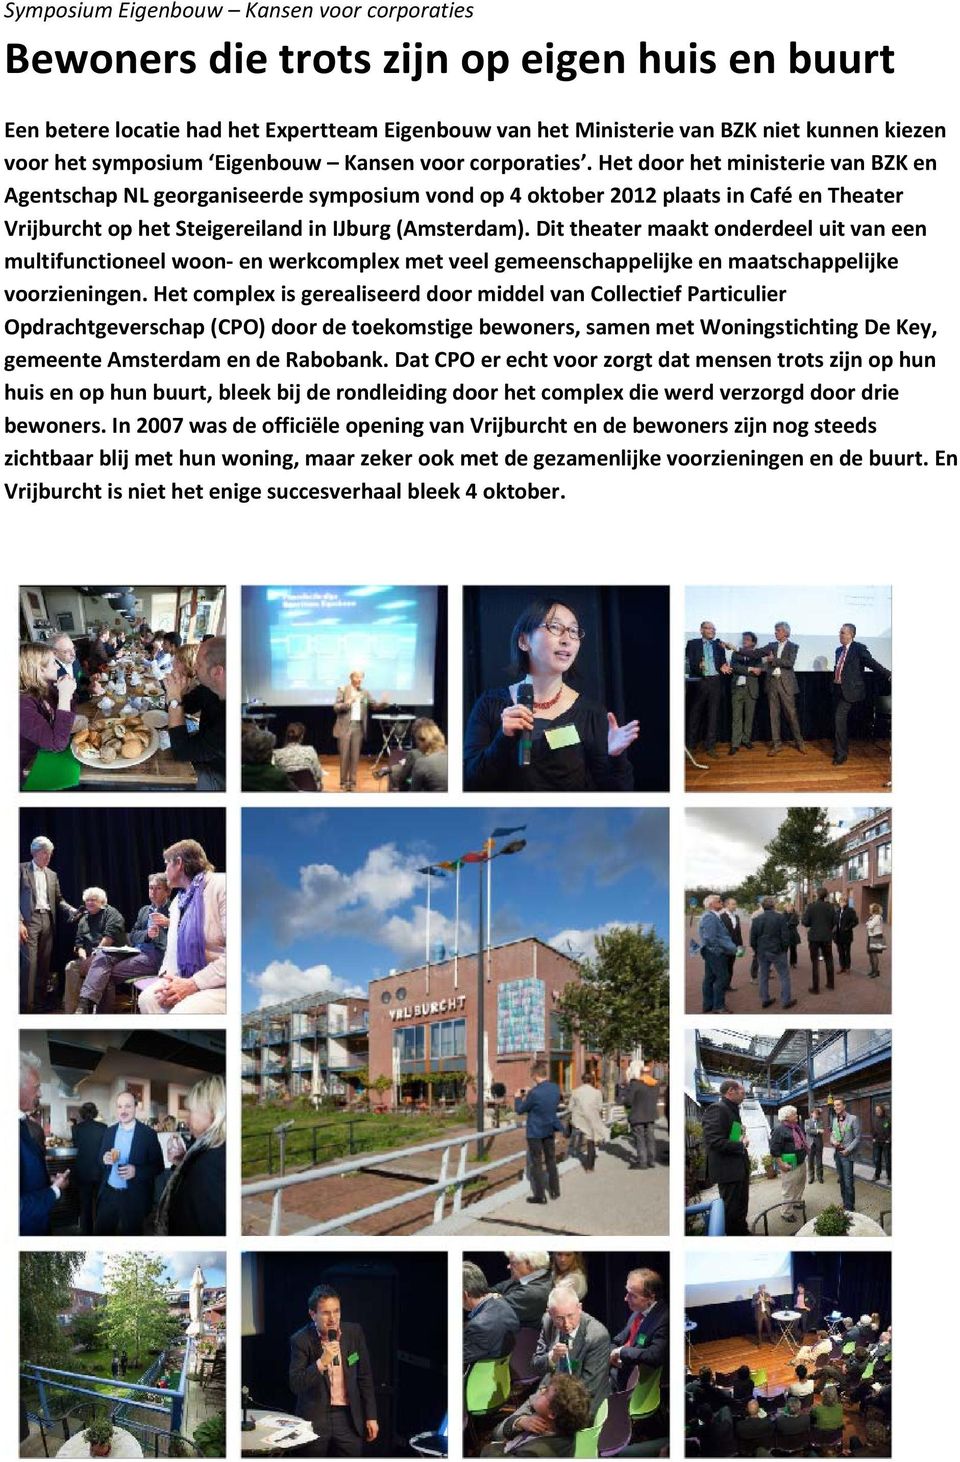 Het door het ministerie van BZK en Agentschap NL georganiseerde symposium vond op 4 oktober 2012 plaats in Café en Theater Vrijburcht op het Steigereiland in IJburg (Amsterdam).